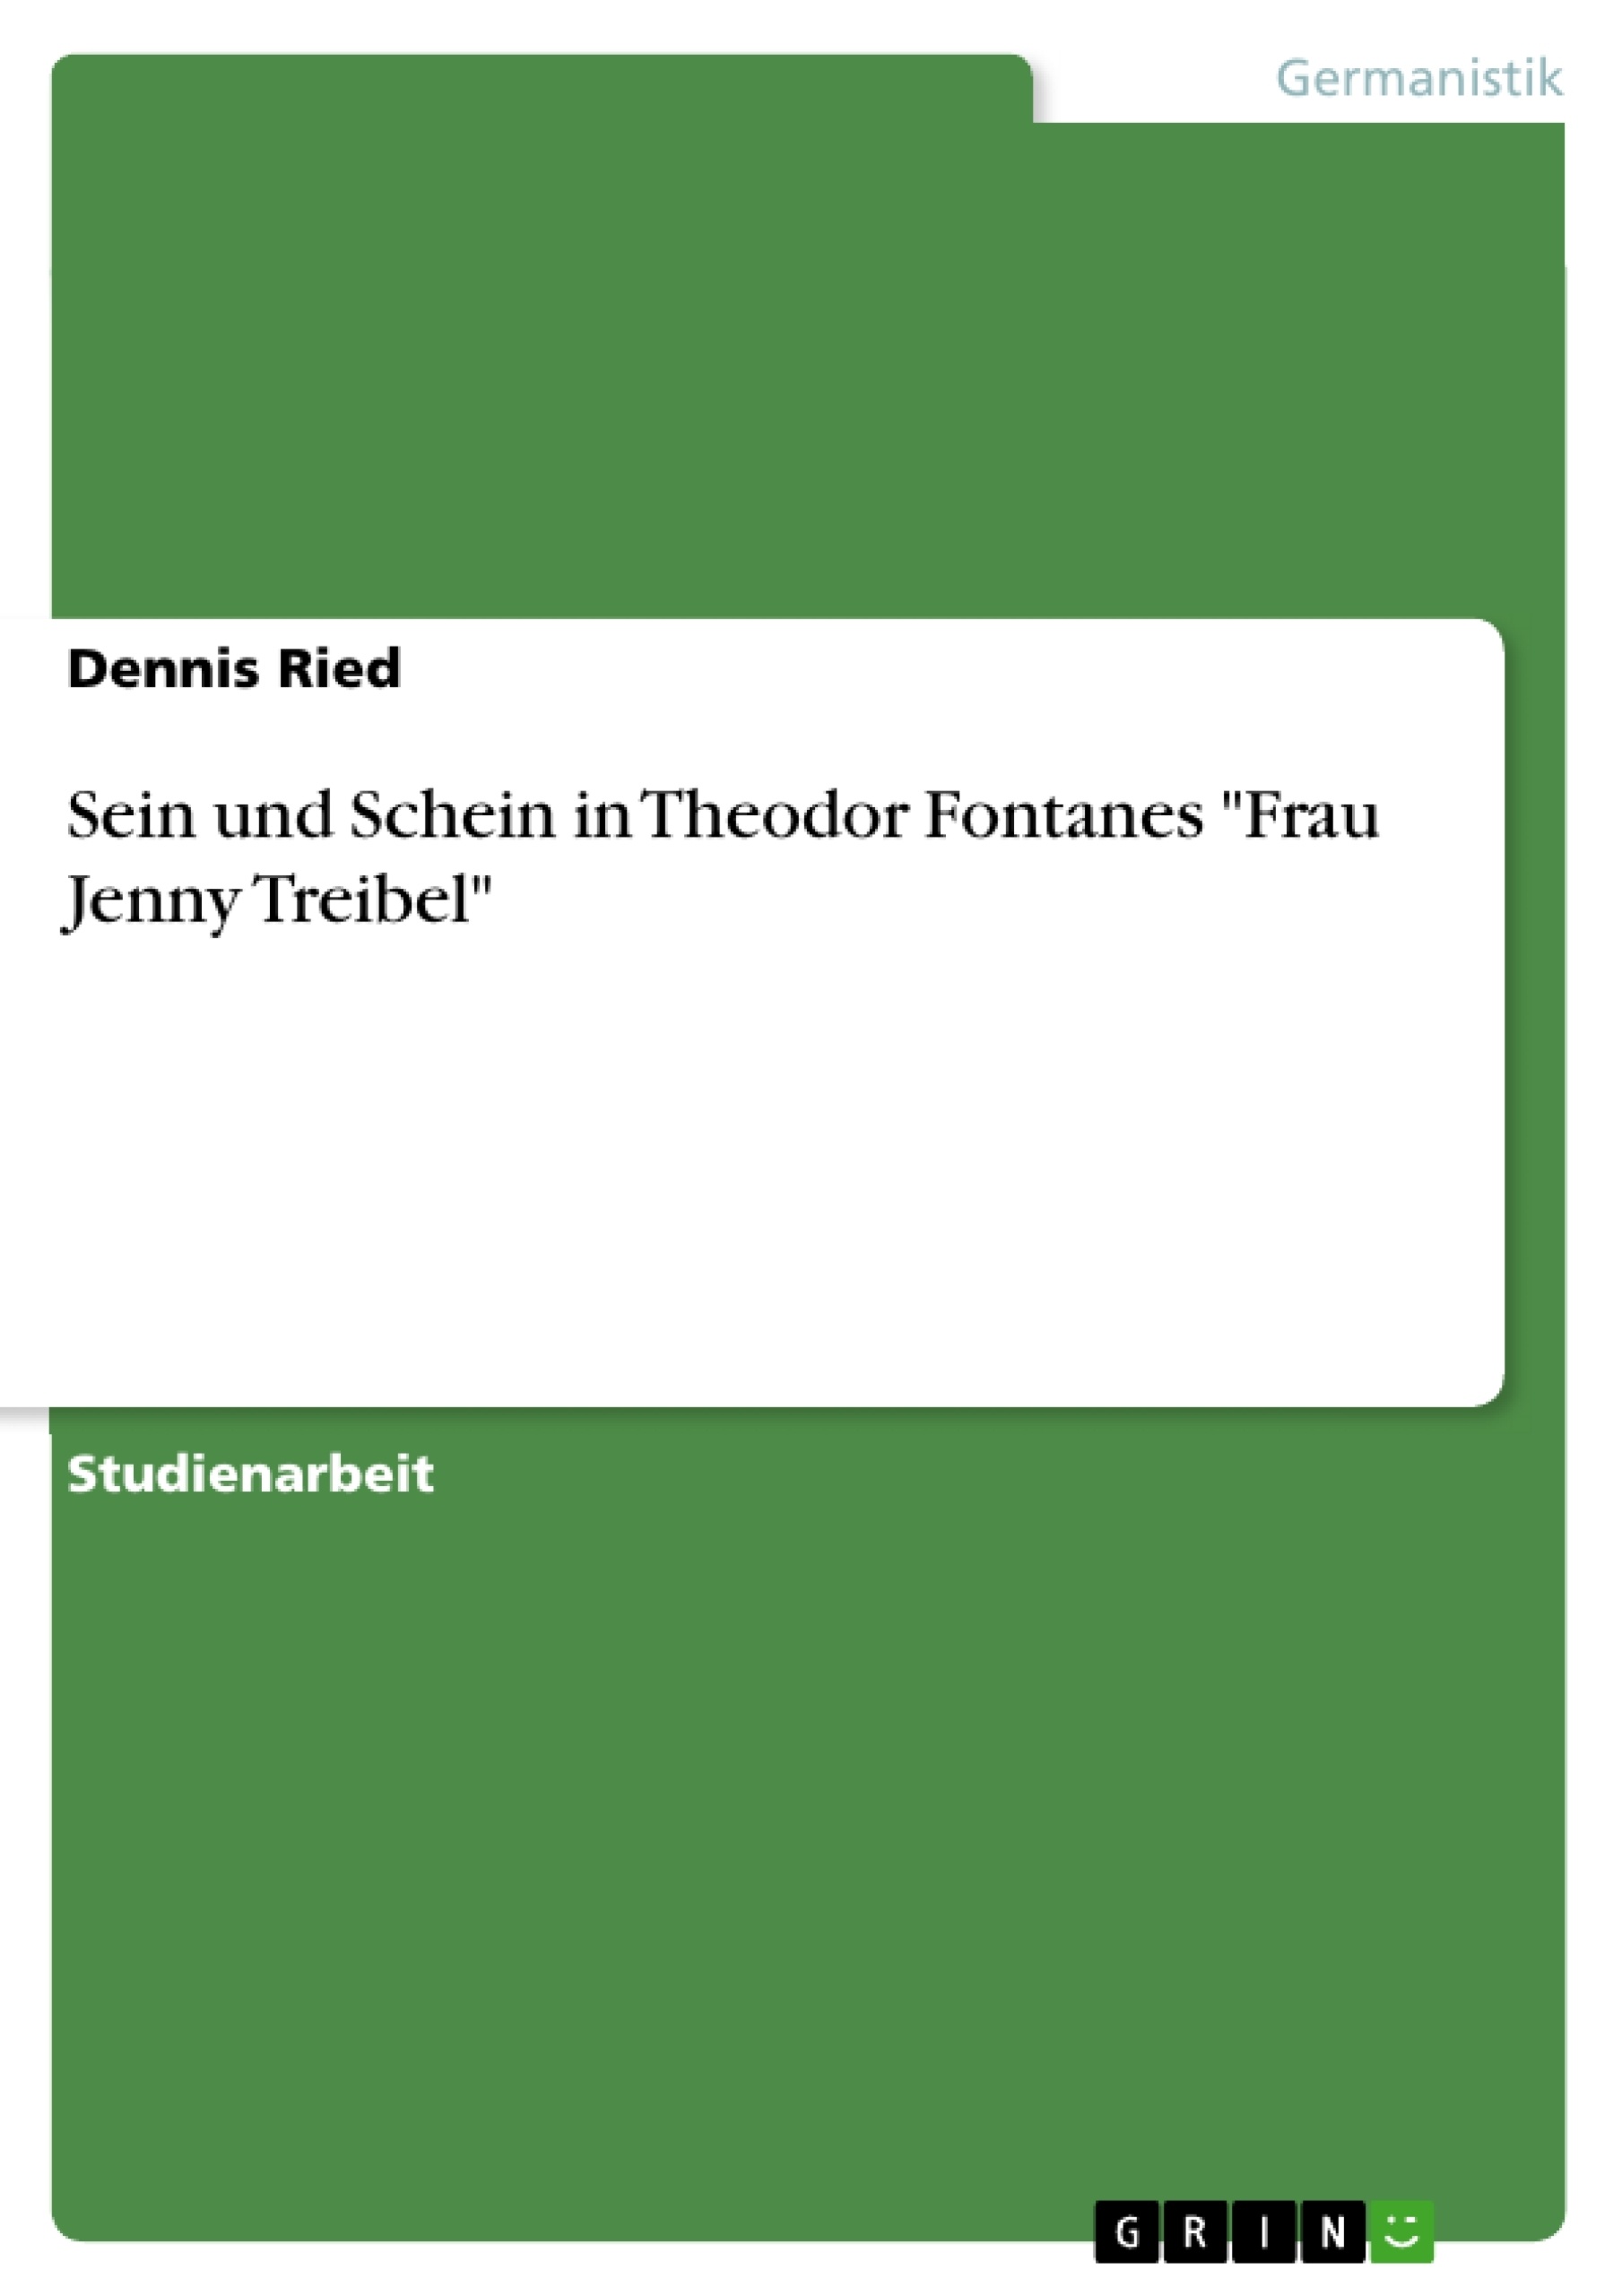 Título: Sein und Schein in Theodor Fontanes "Frau Jenny Treibel"